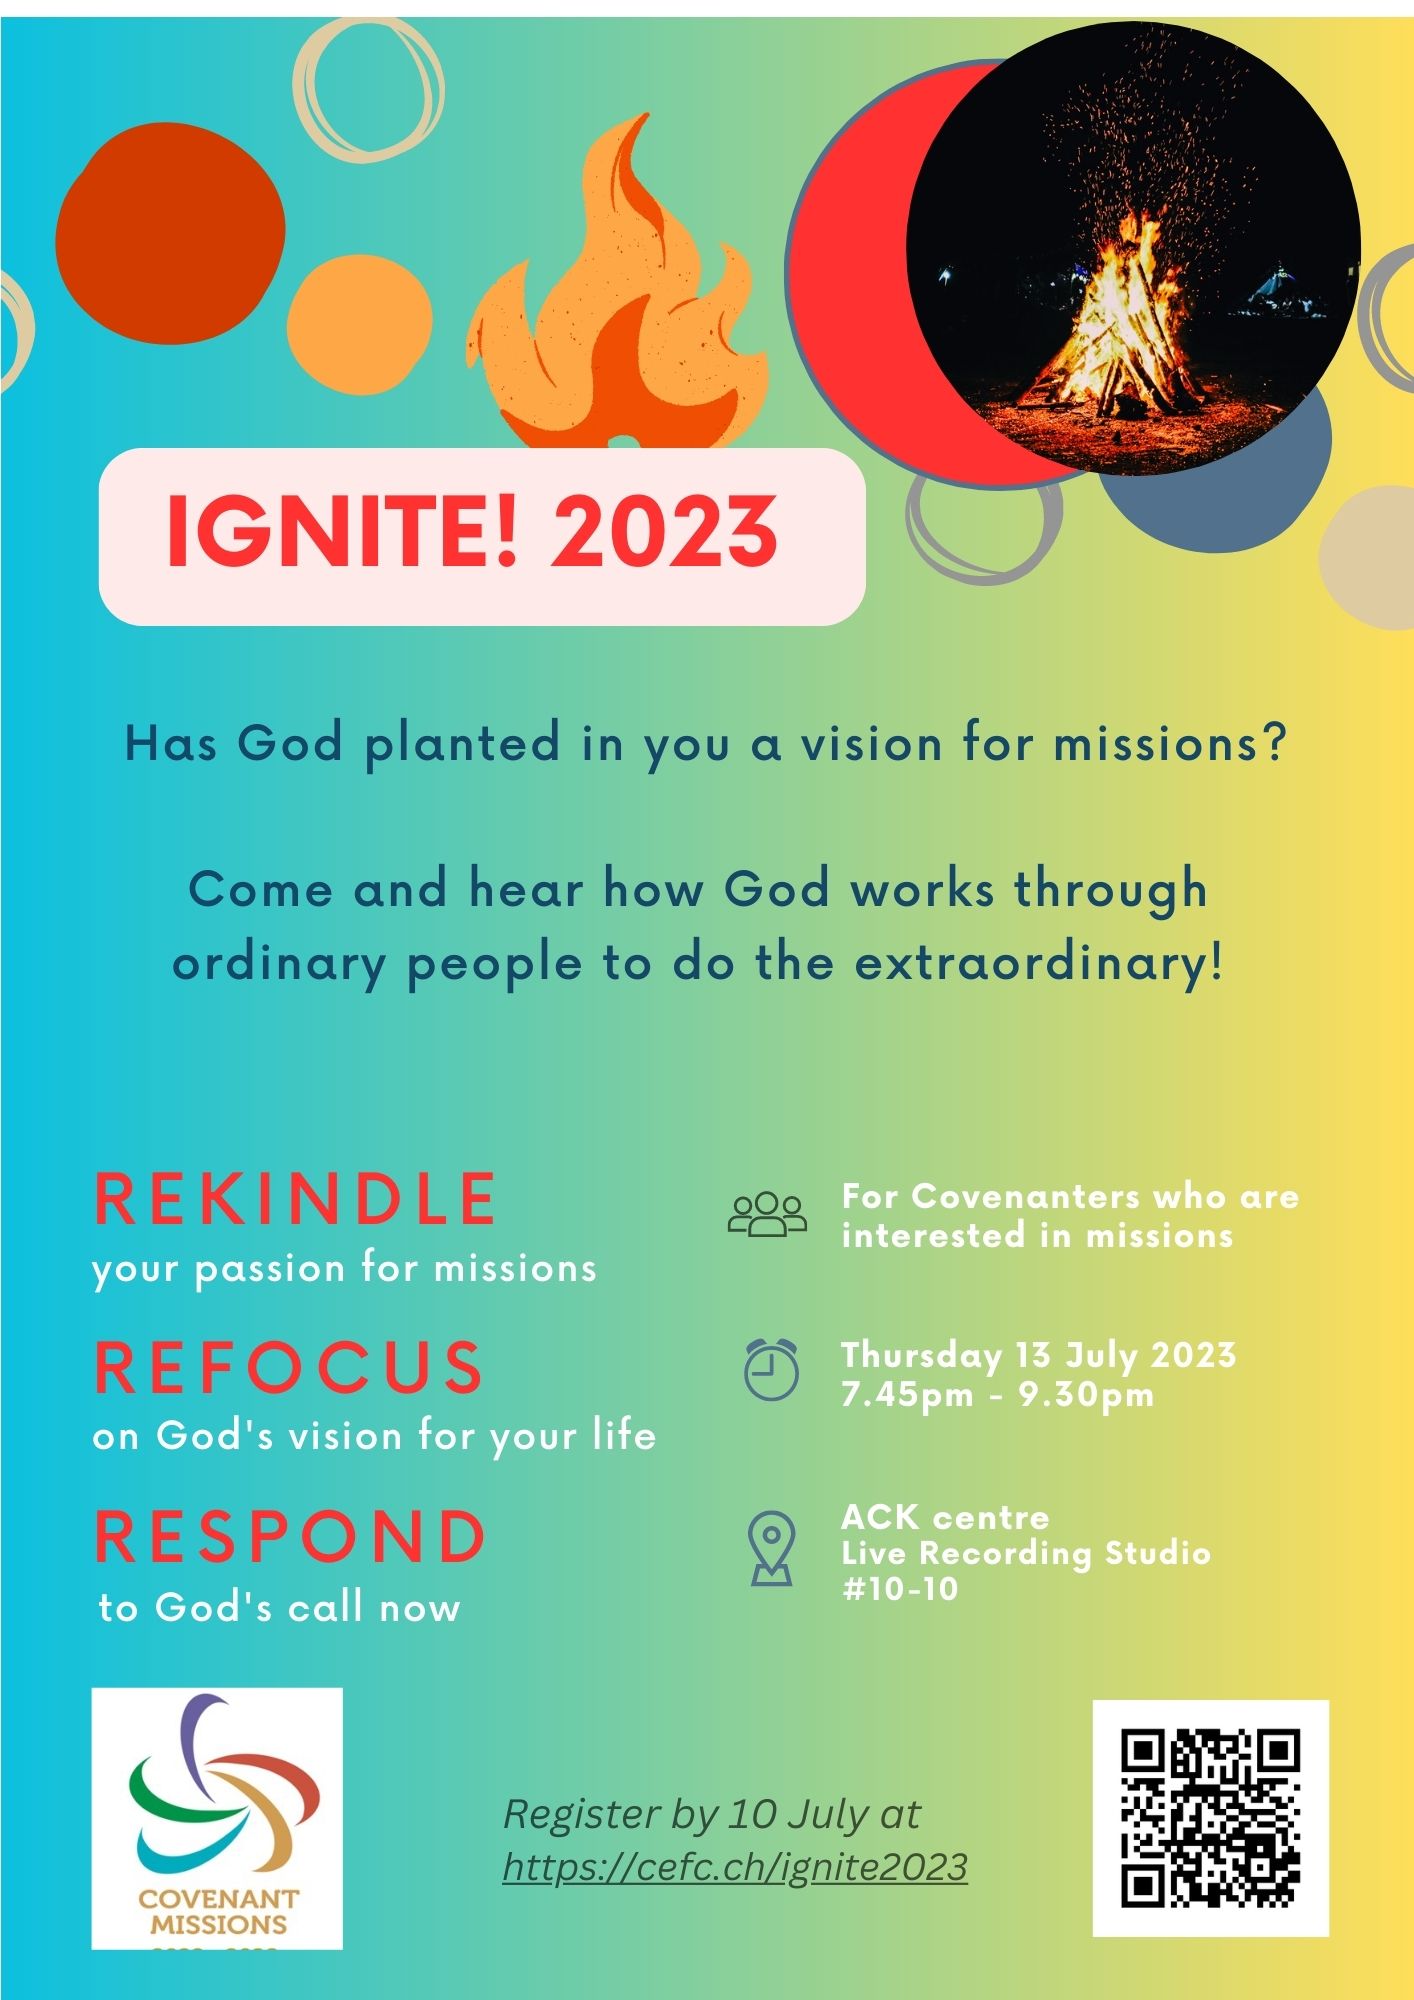 Ignite 2023 CEFC Missions